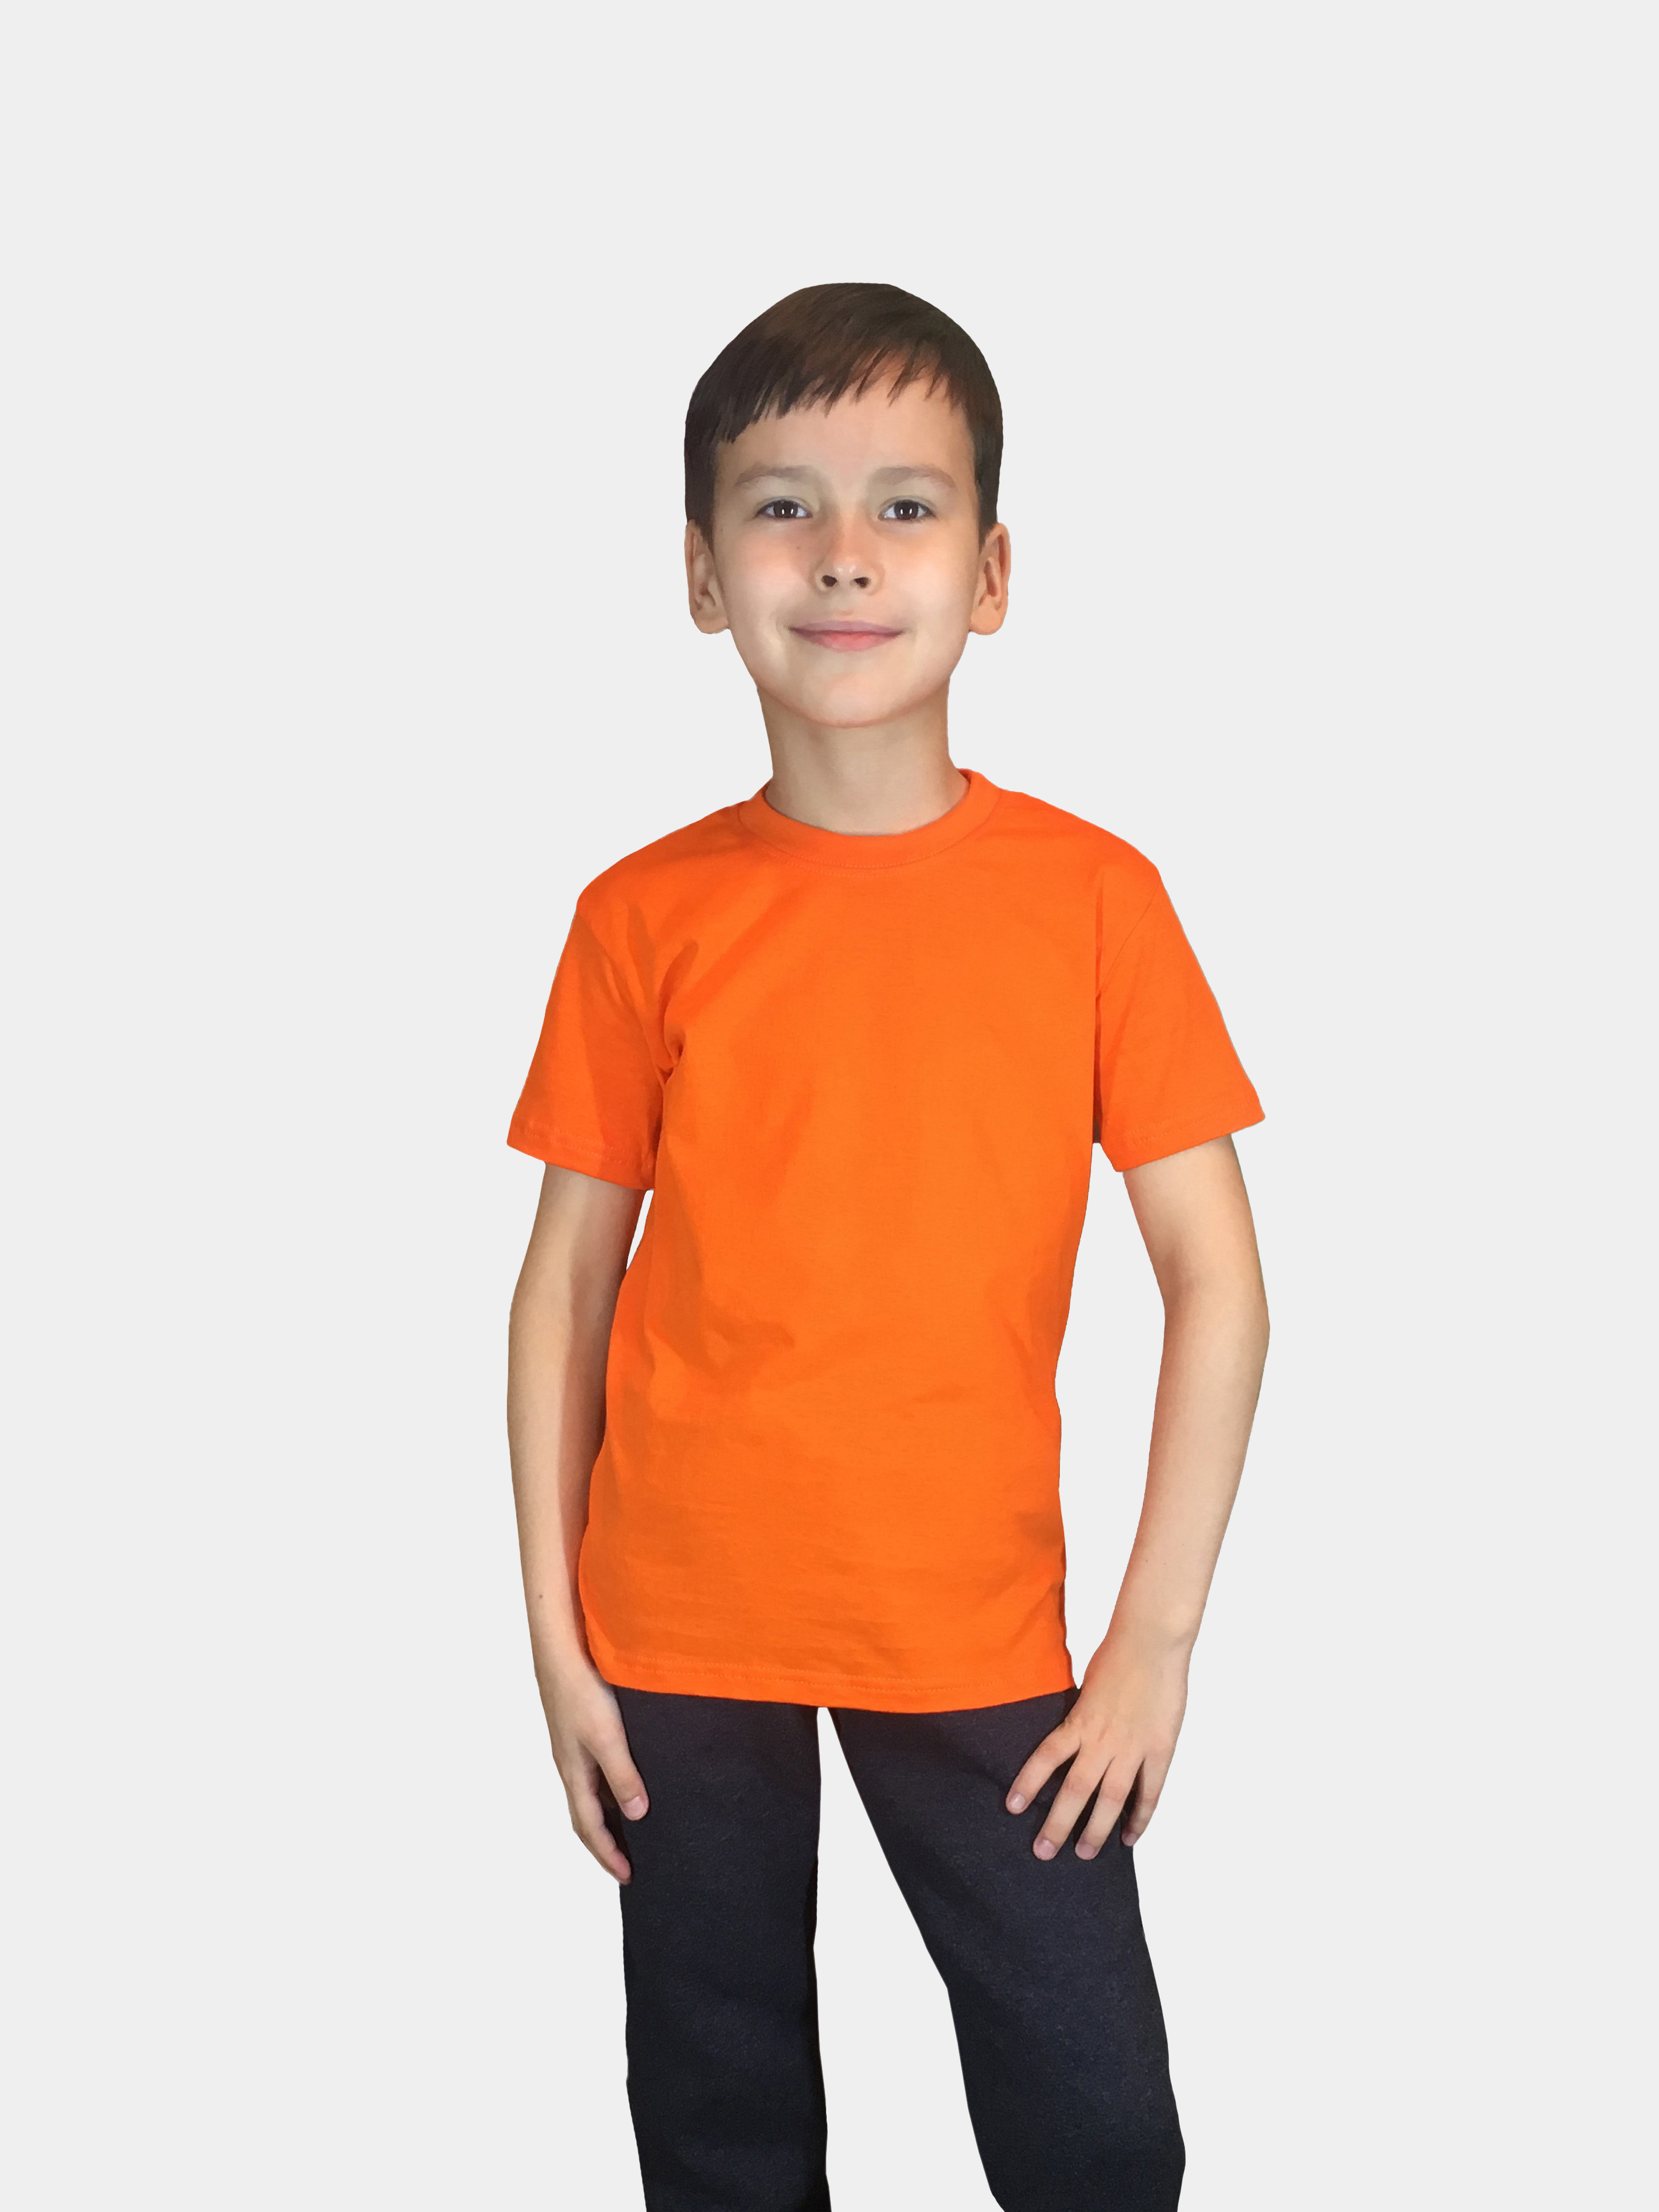 Футболка детская Детрик, оранжевая размер 110, Ф-1-114